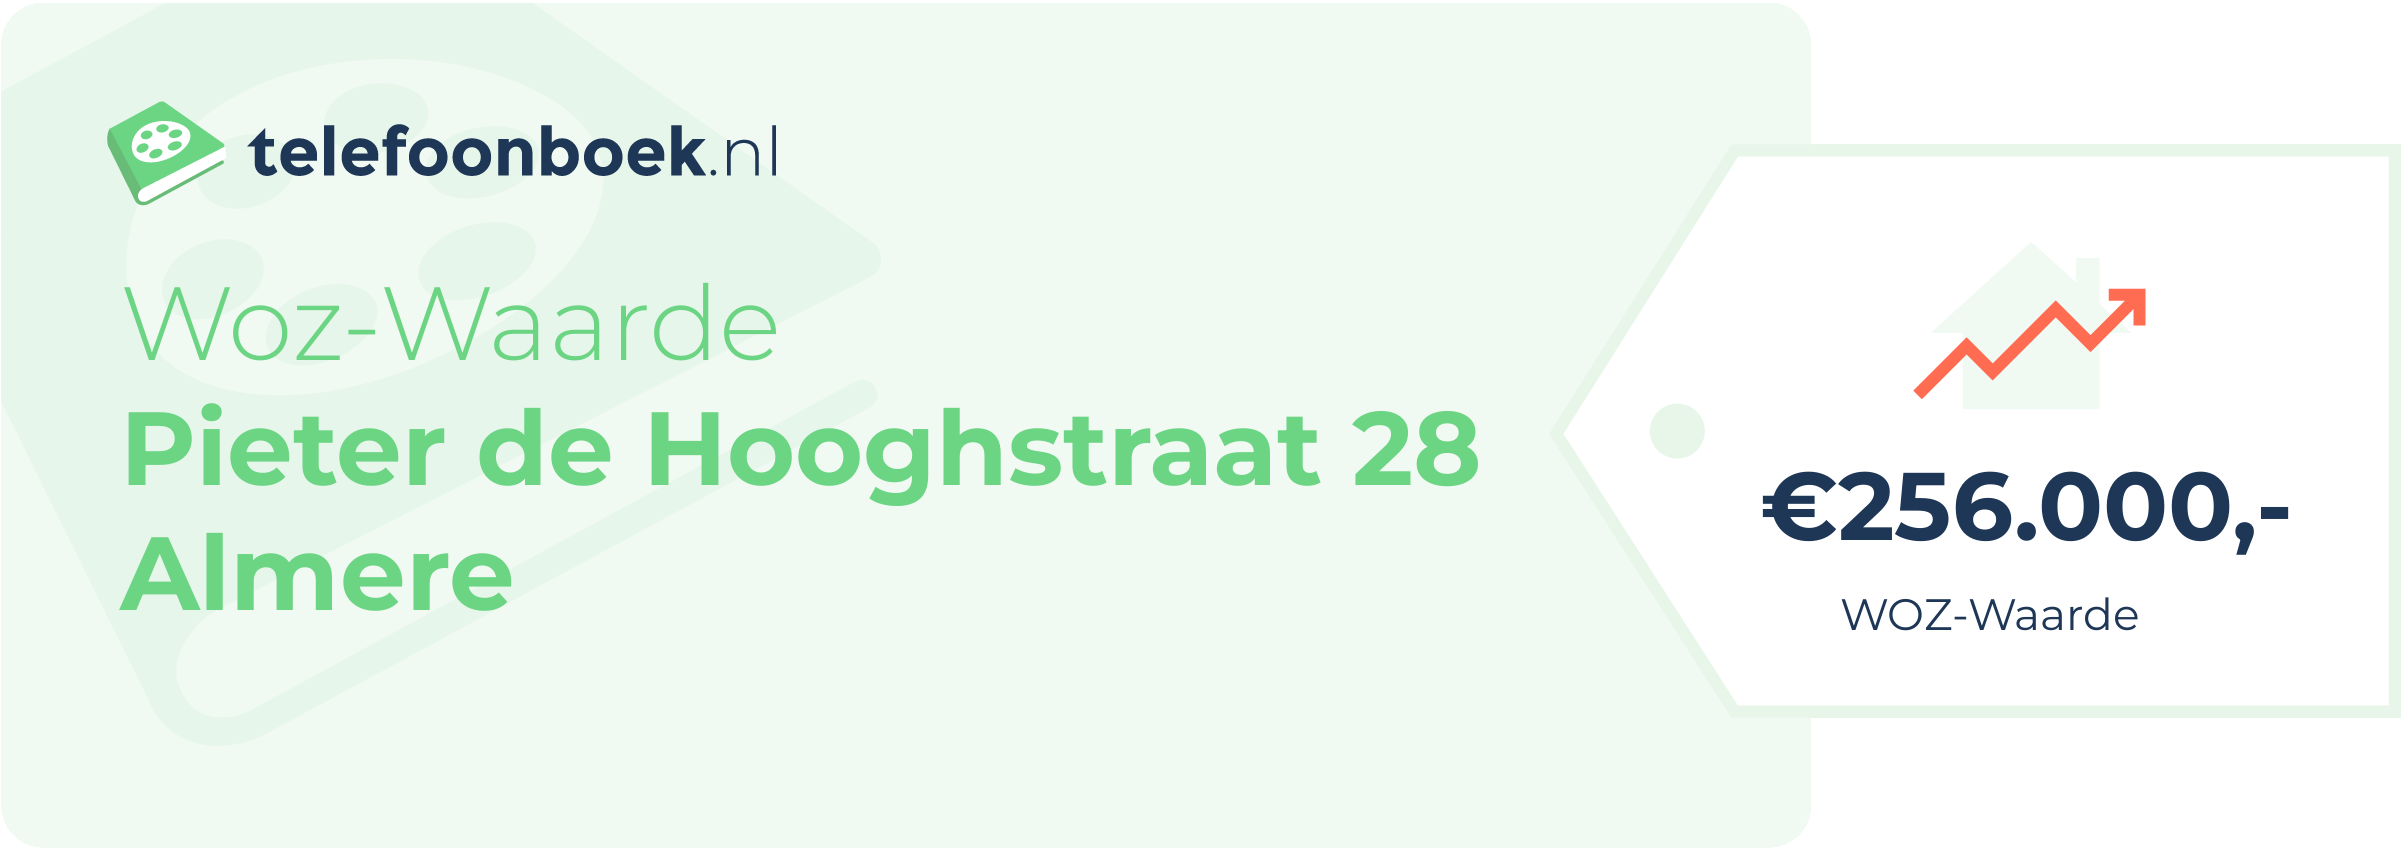 WOZ-waarde Pieter De Hooghstraat 28 Almere